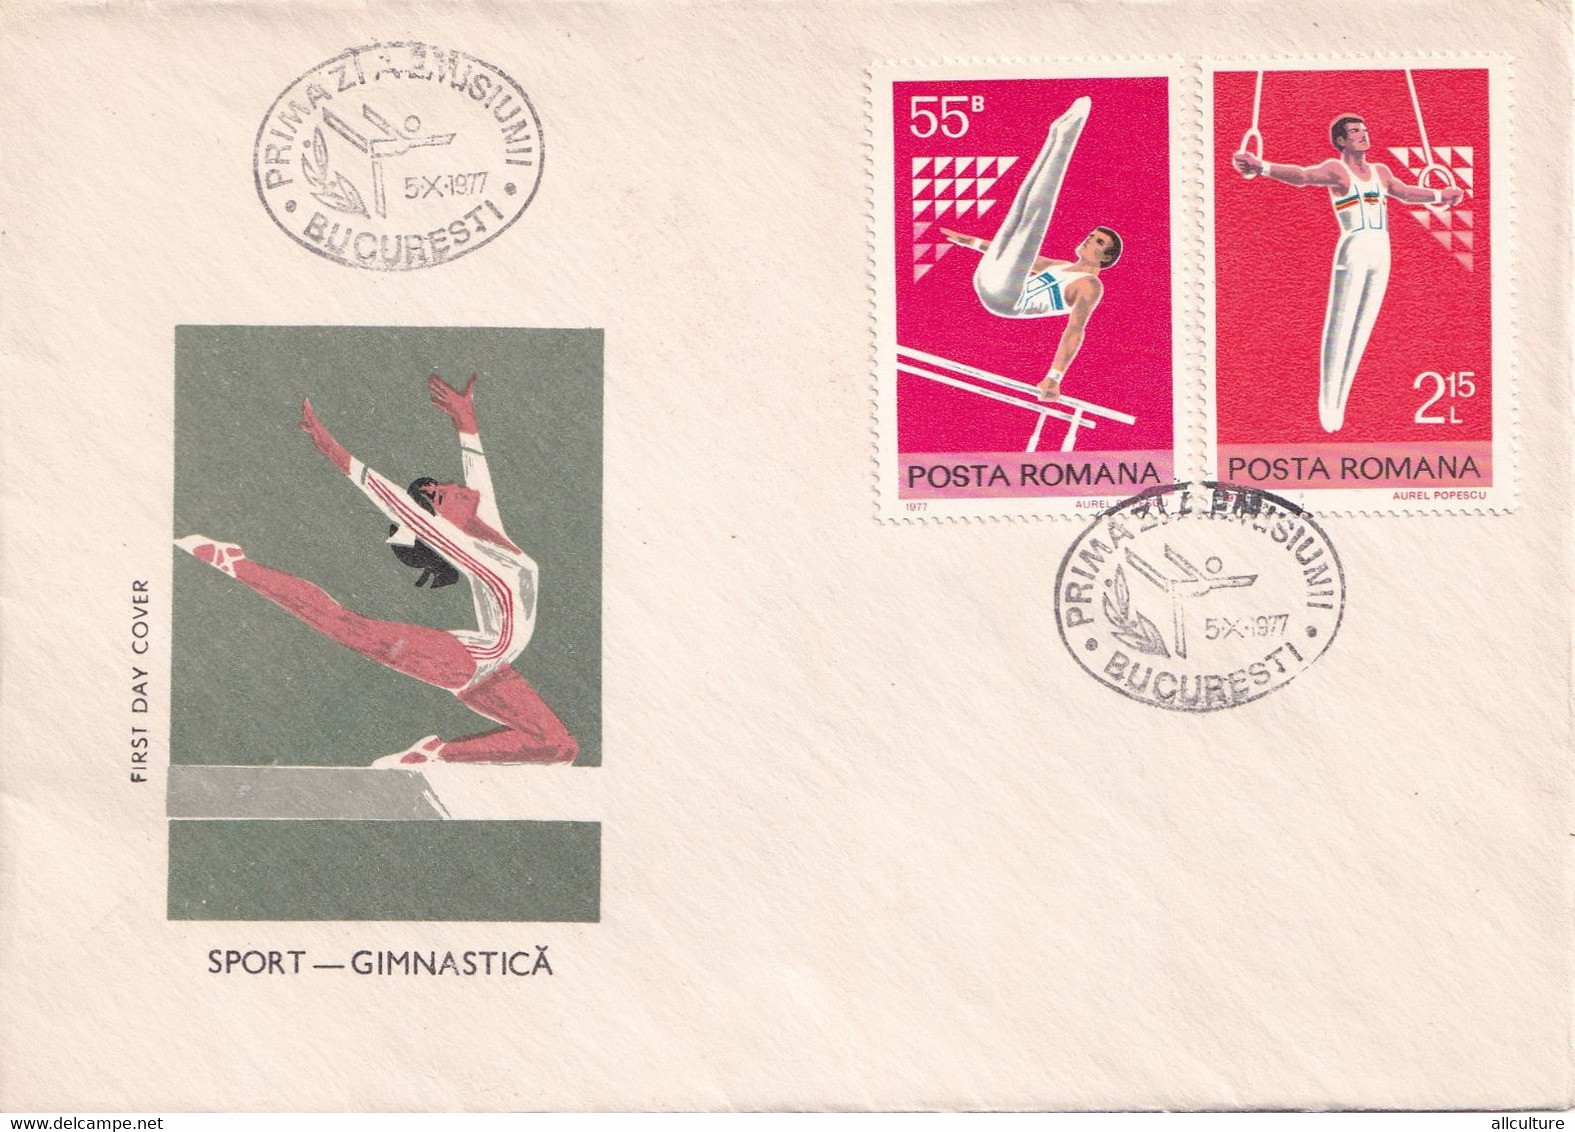 A2688- Sport - Gimnastica ,Romania, Bucuresti 1977 3 Covers FDC - Ginnastica